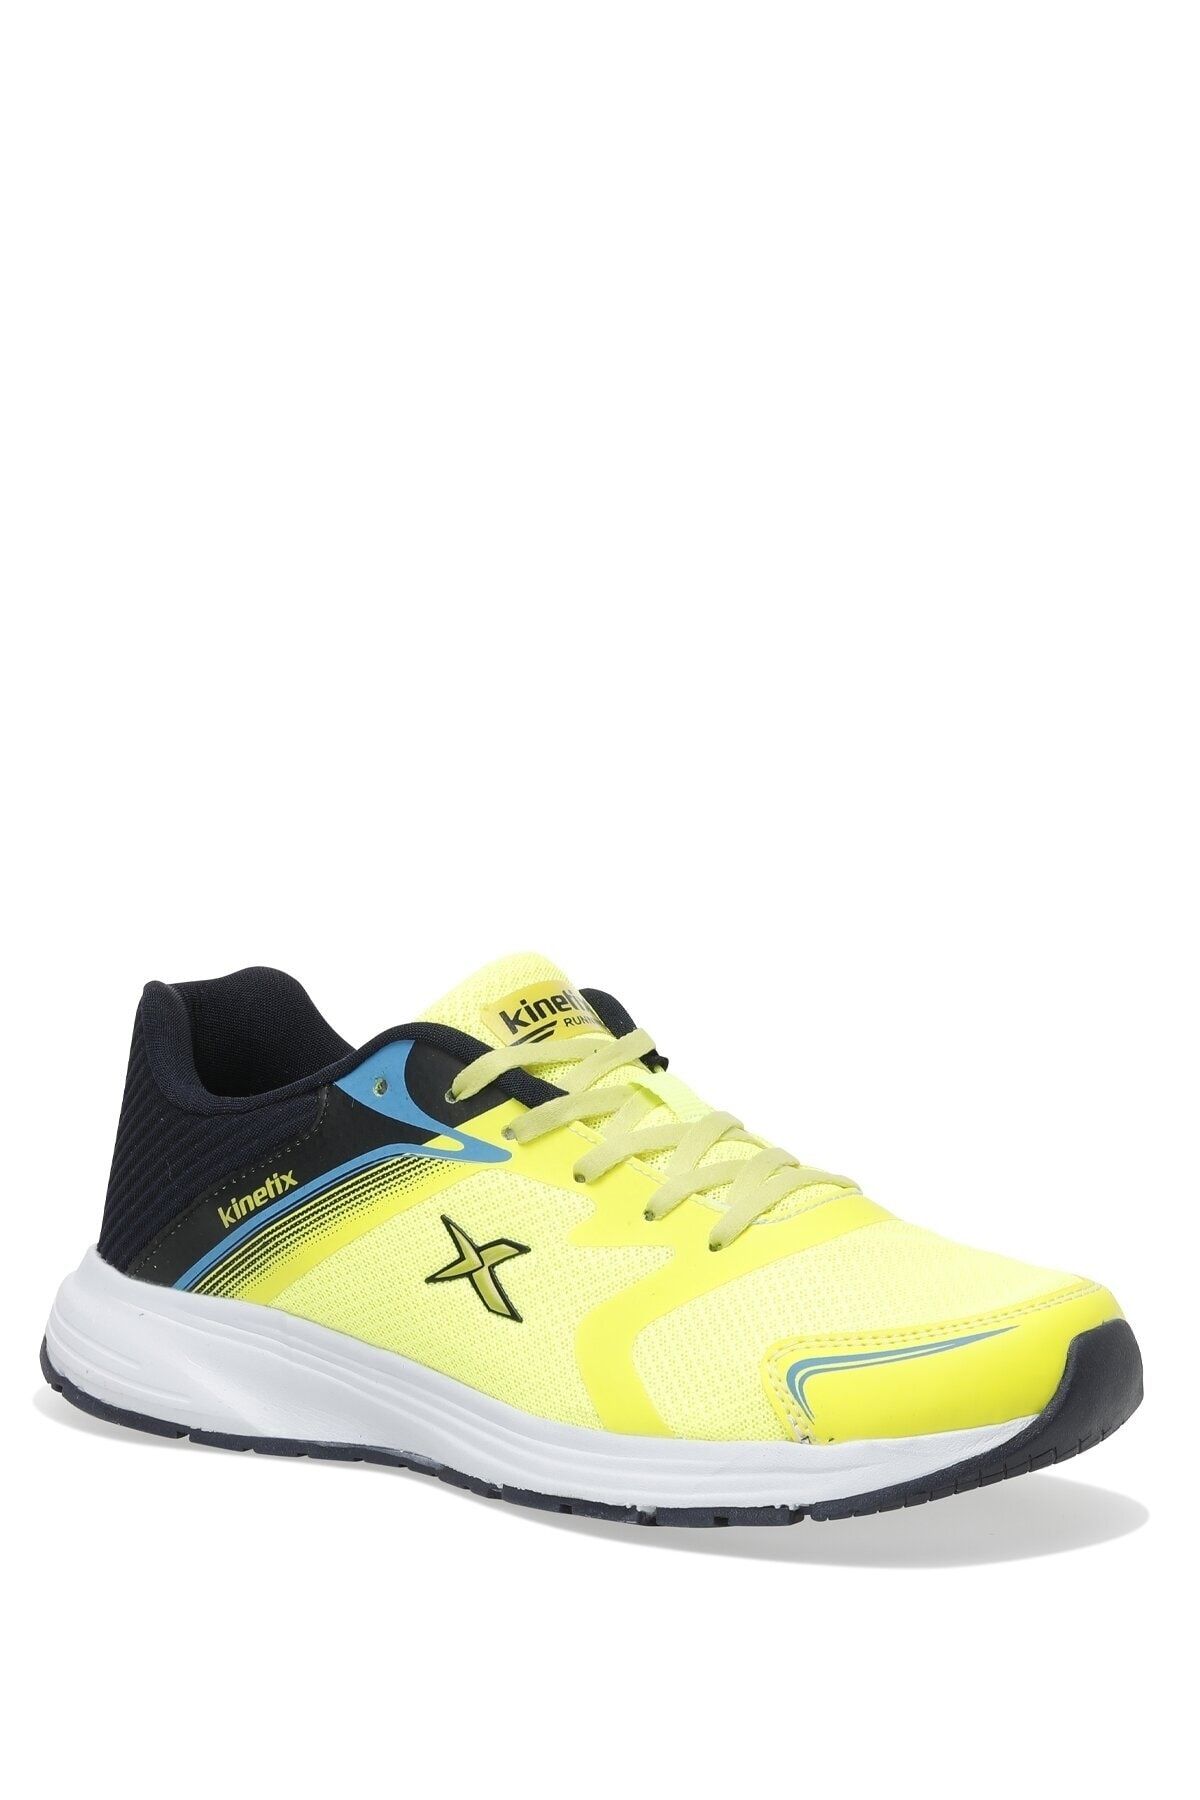 Kinetix Tıeron Tx 2fx Erkek Koşu Ayakkabısı